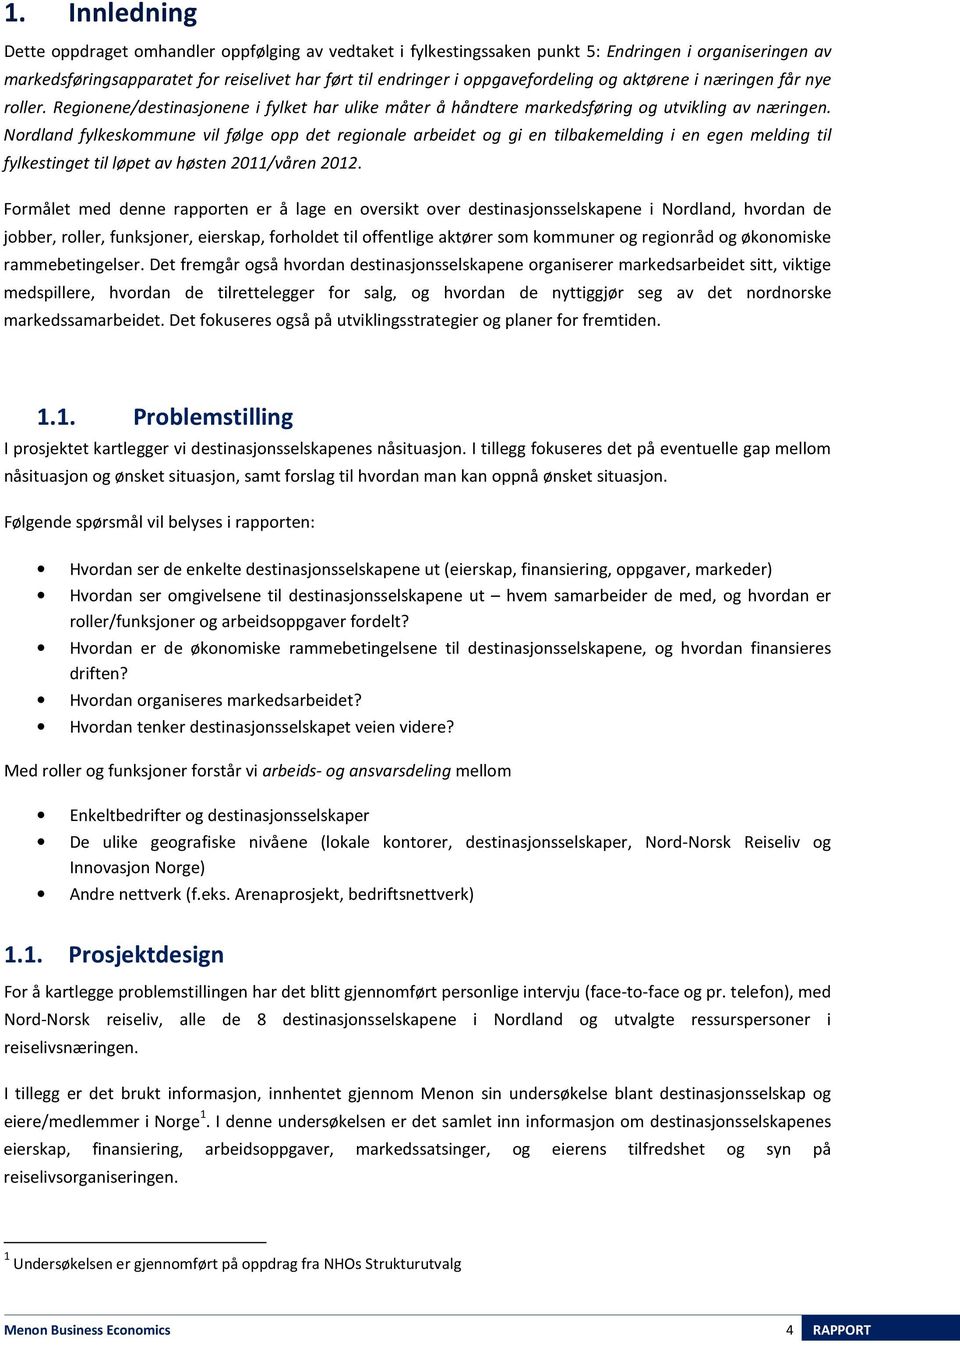 Nordland fylkeskommune vil følge opp det regionale arbeidet og gi en tilbakemelding i en egen melding til fylkestinget til løpet av høsten 2011/våren 2012.